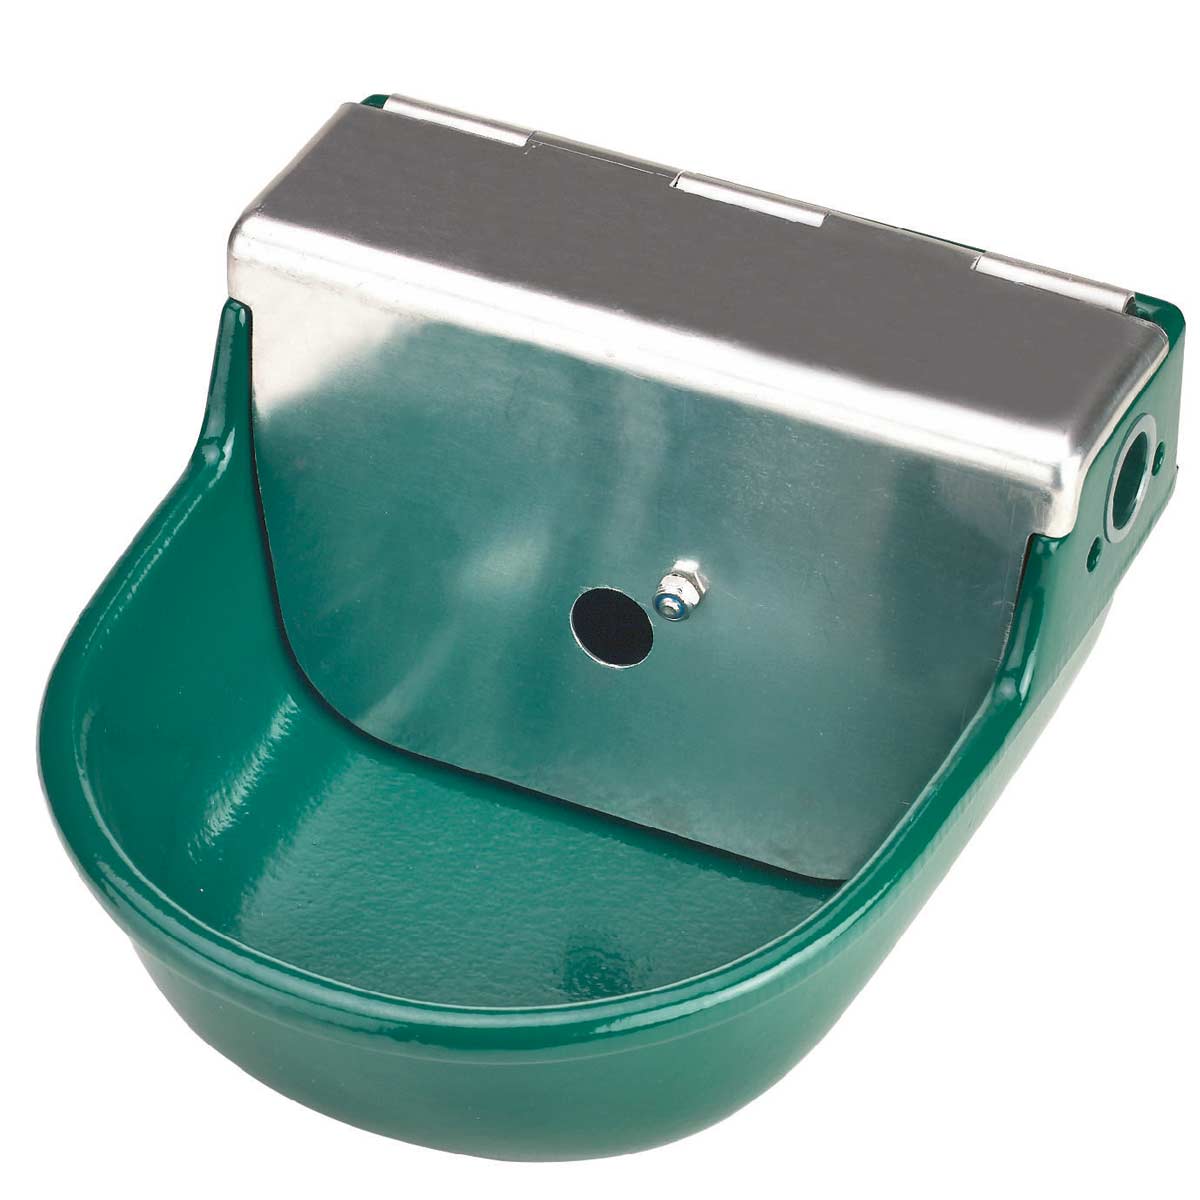 Float bowl S190 2 litre grey cast iron